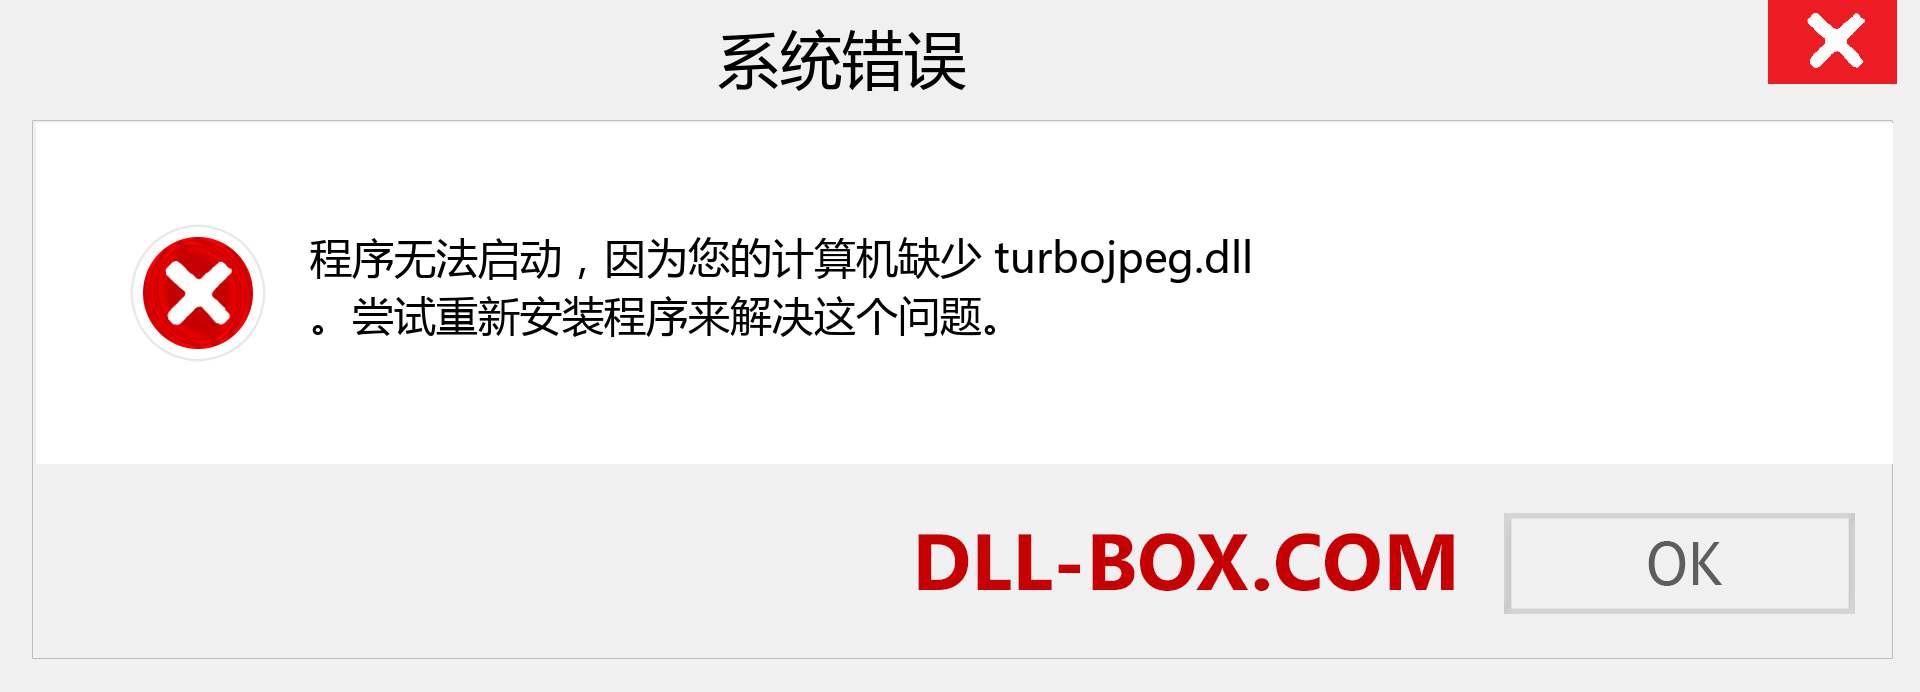 turbojpeg.dll 文件丢失？。 适用于 Windows 7、8、10 的下载 - 修复 Windows、照片、图像上的 turbojpeg dll 丢失错误